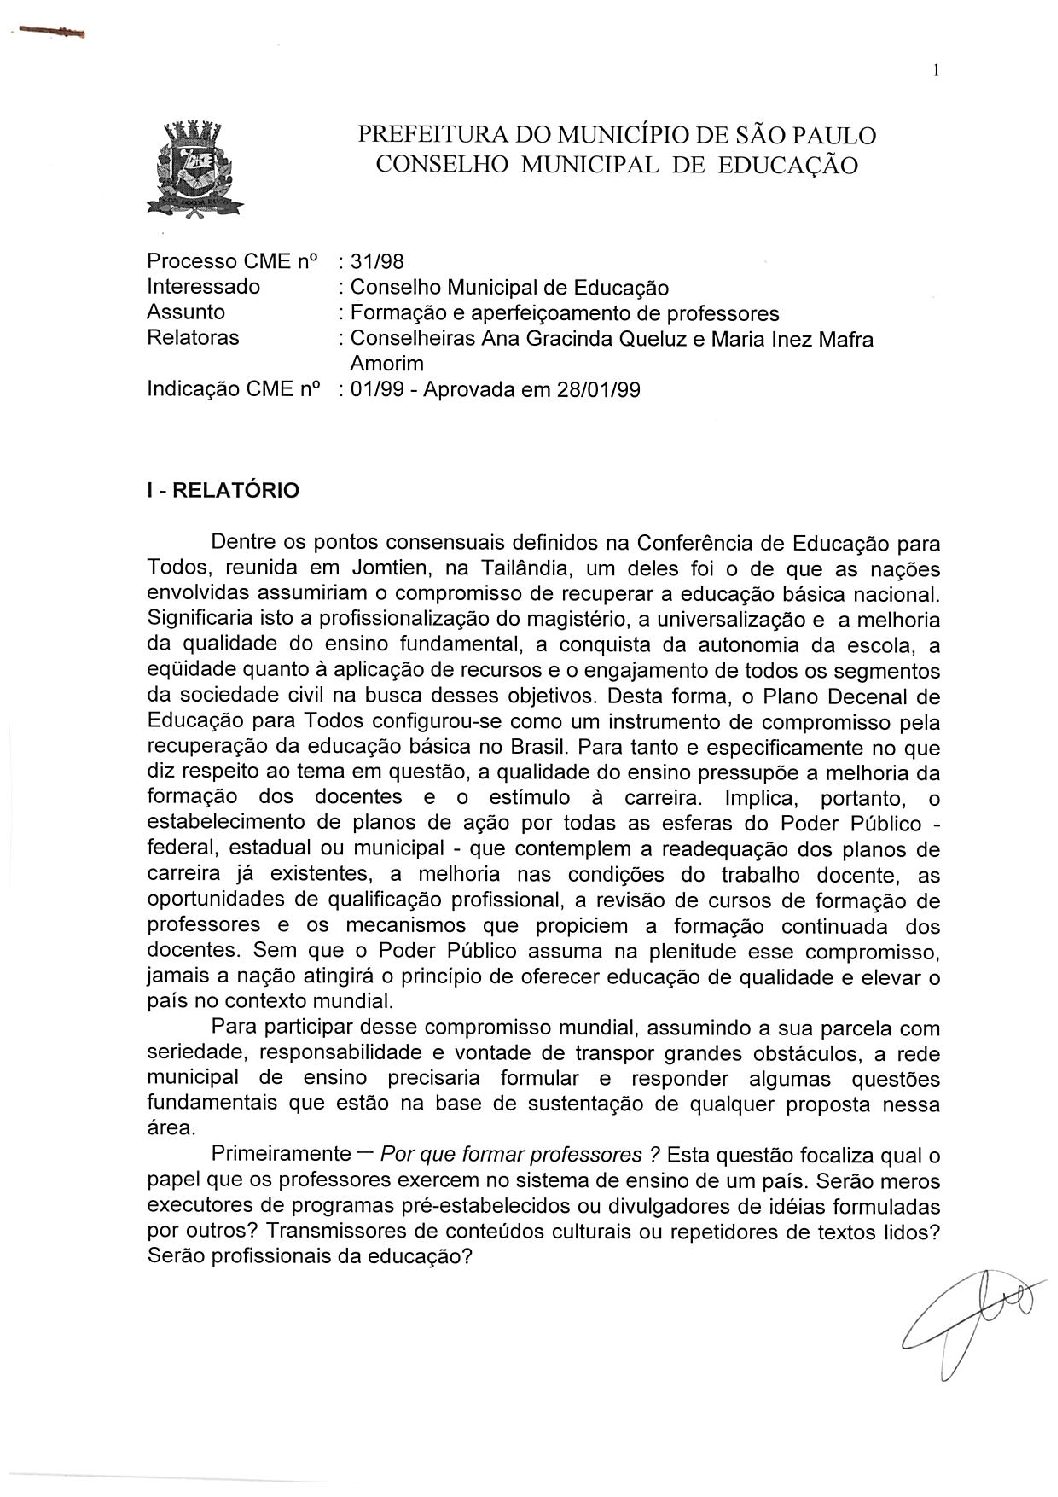 Indicação CME nº 01/1999 - Formação e aperfeiçoamento de professores